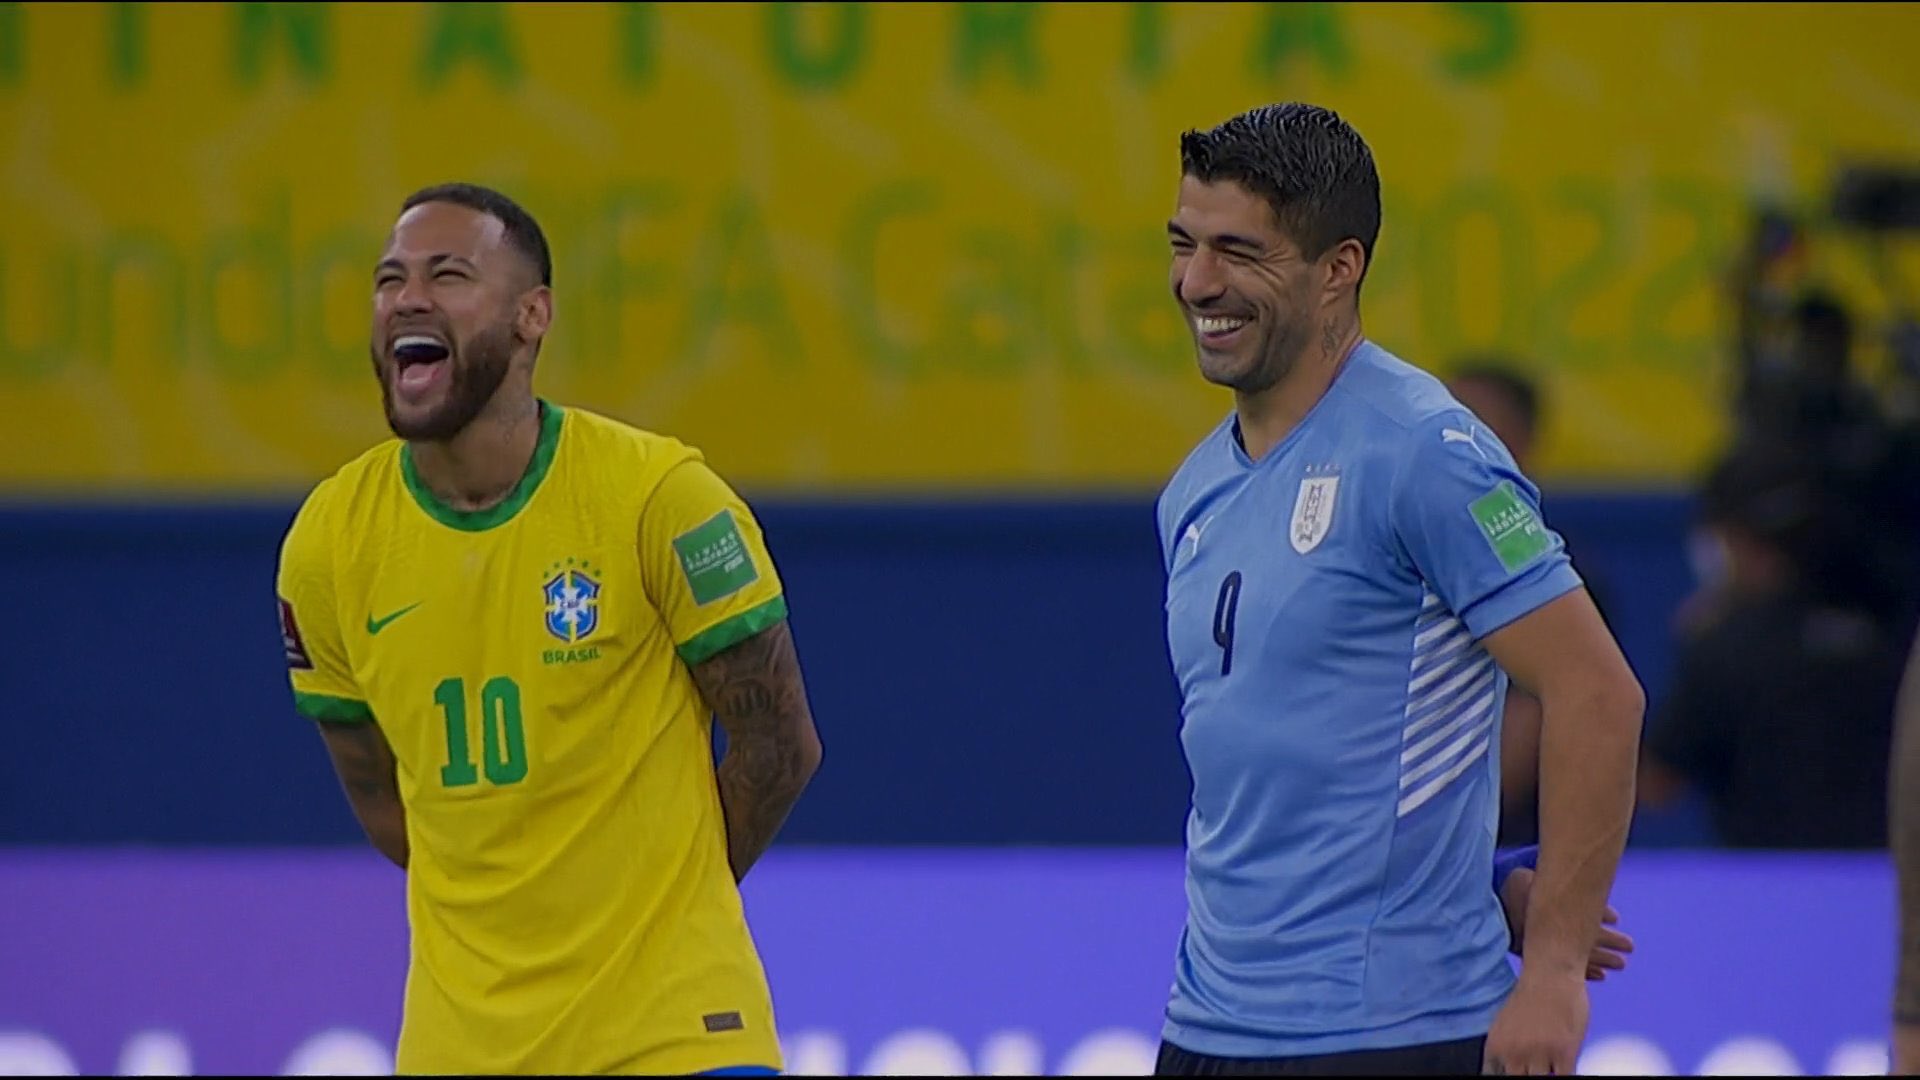 البرازيل يكتسح أوروجواي برباعية في تصفيات كأس العالم أمريكا الجنوبية